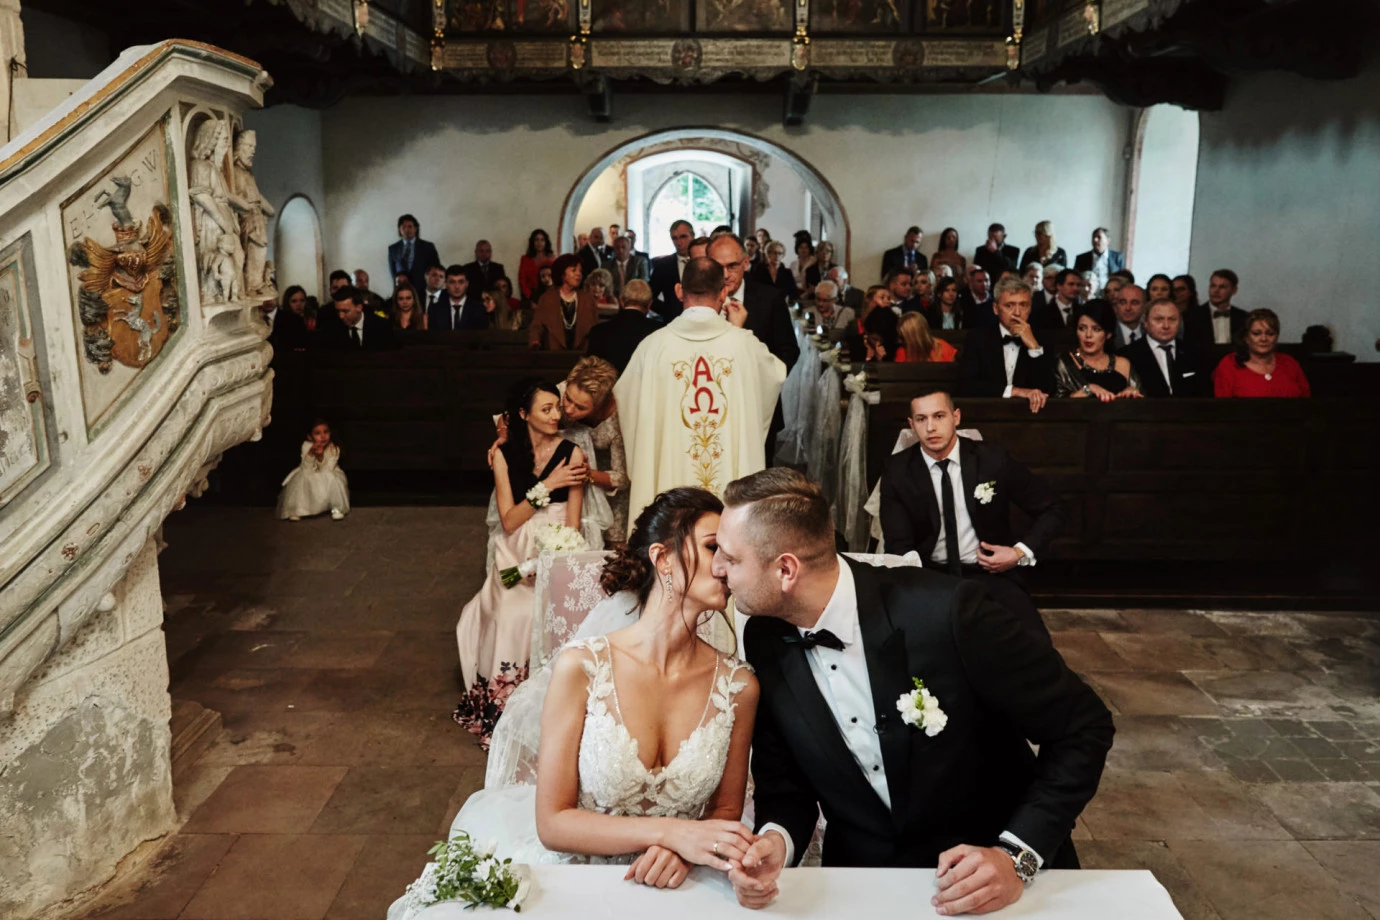 zdjęcia swinoujscie fotograf przemek-bialek-fotografia portfolio zdjecia slubne inspiracje wesele plener slubny sesja slubna